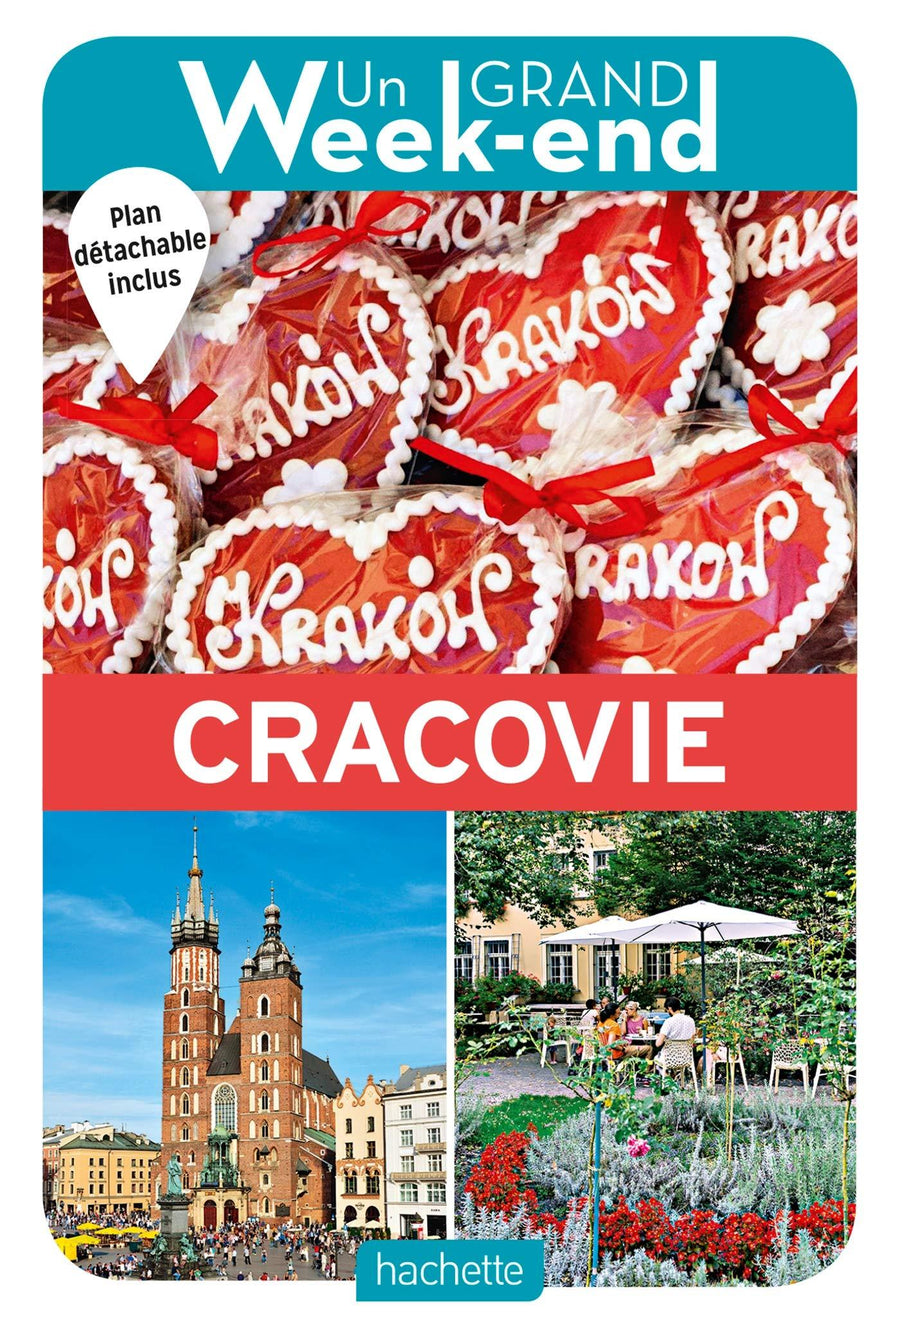 Guide de voyage - Un Grand Week-end : Cracovie | Hachette guide de voyage Hachette 